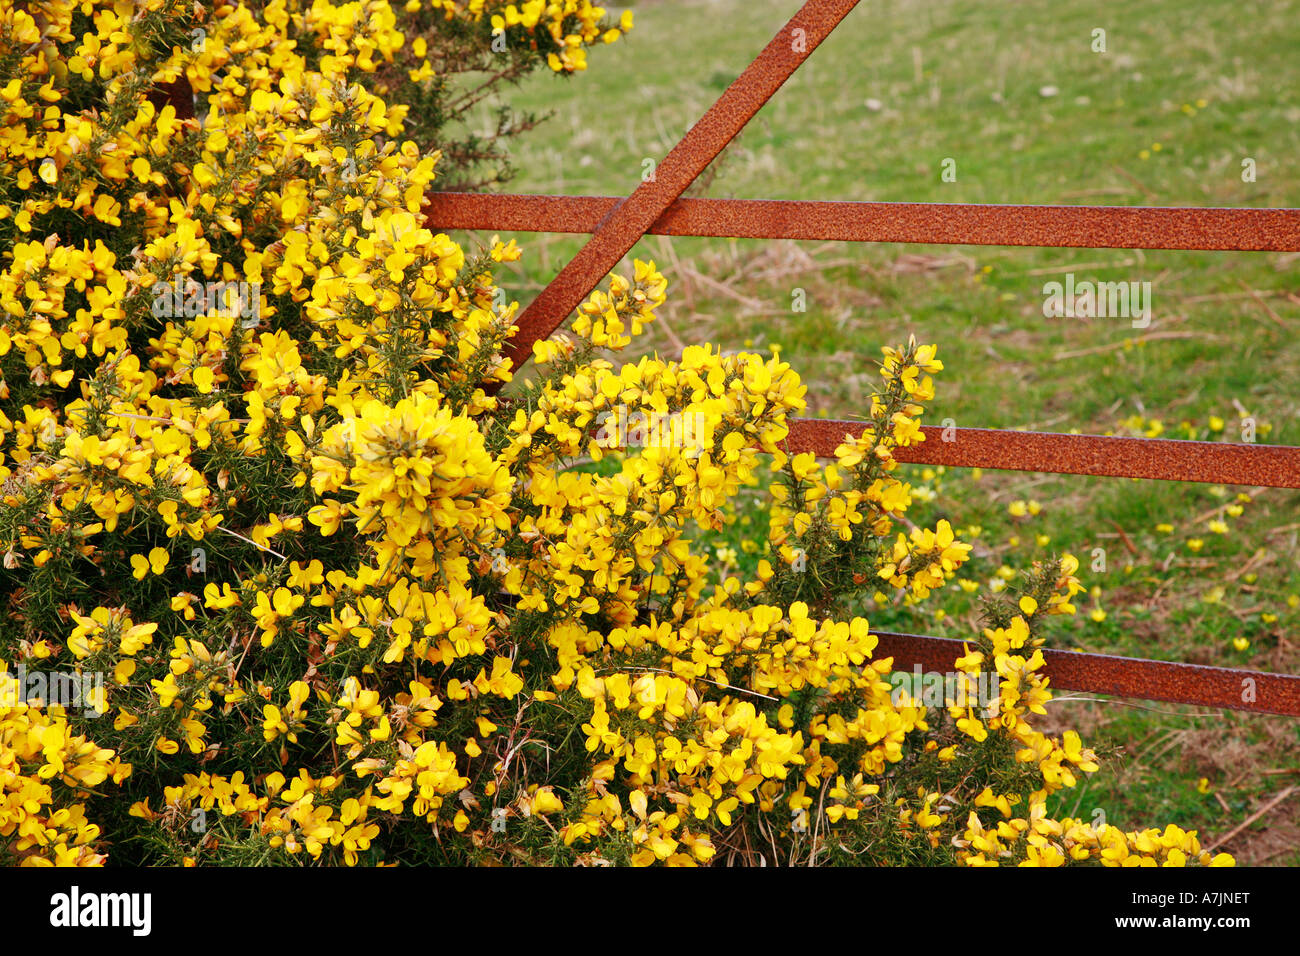 Puerta de hierro oxidado y Aliaga planta Ulex europaeus Foto de stock